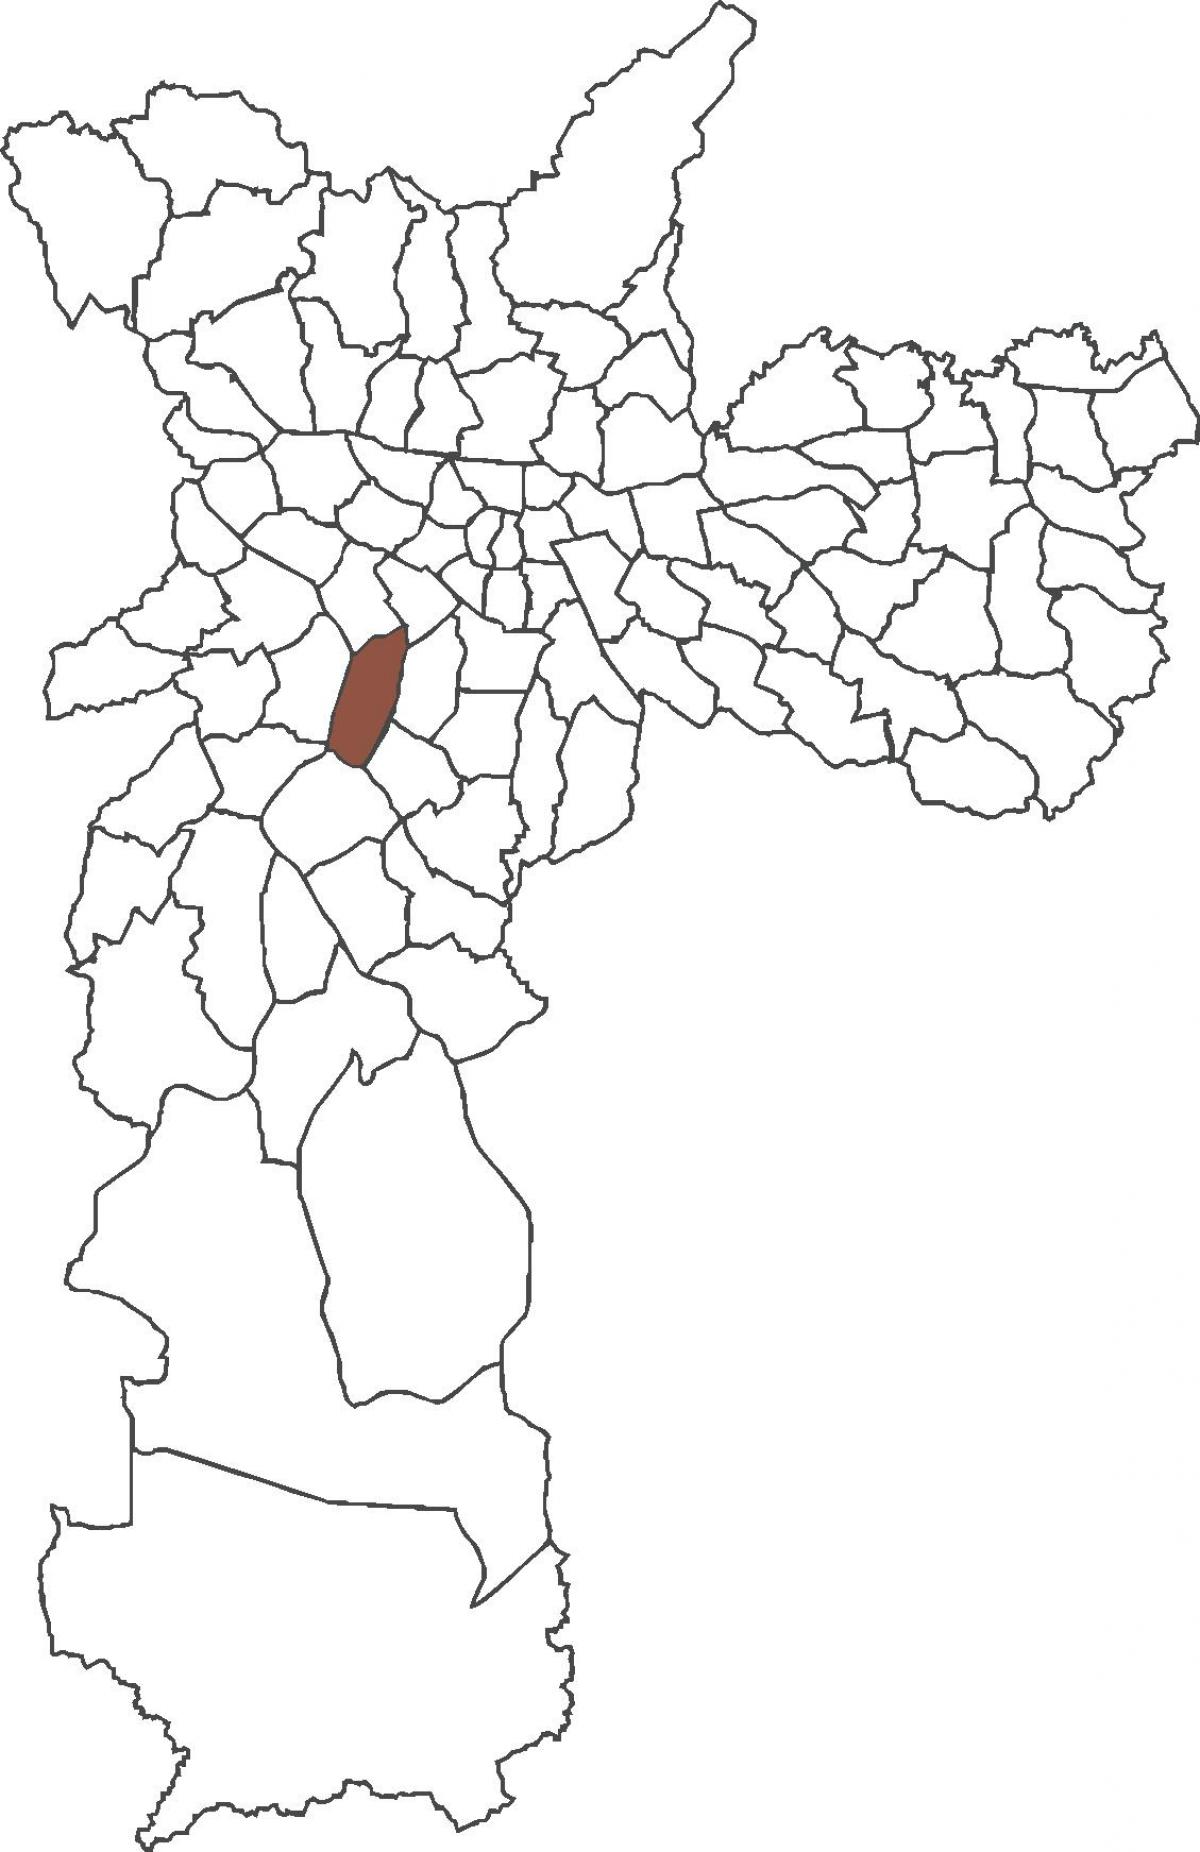 মানচিত্র, Itaim বিবি জেলা